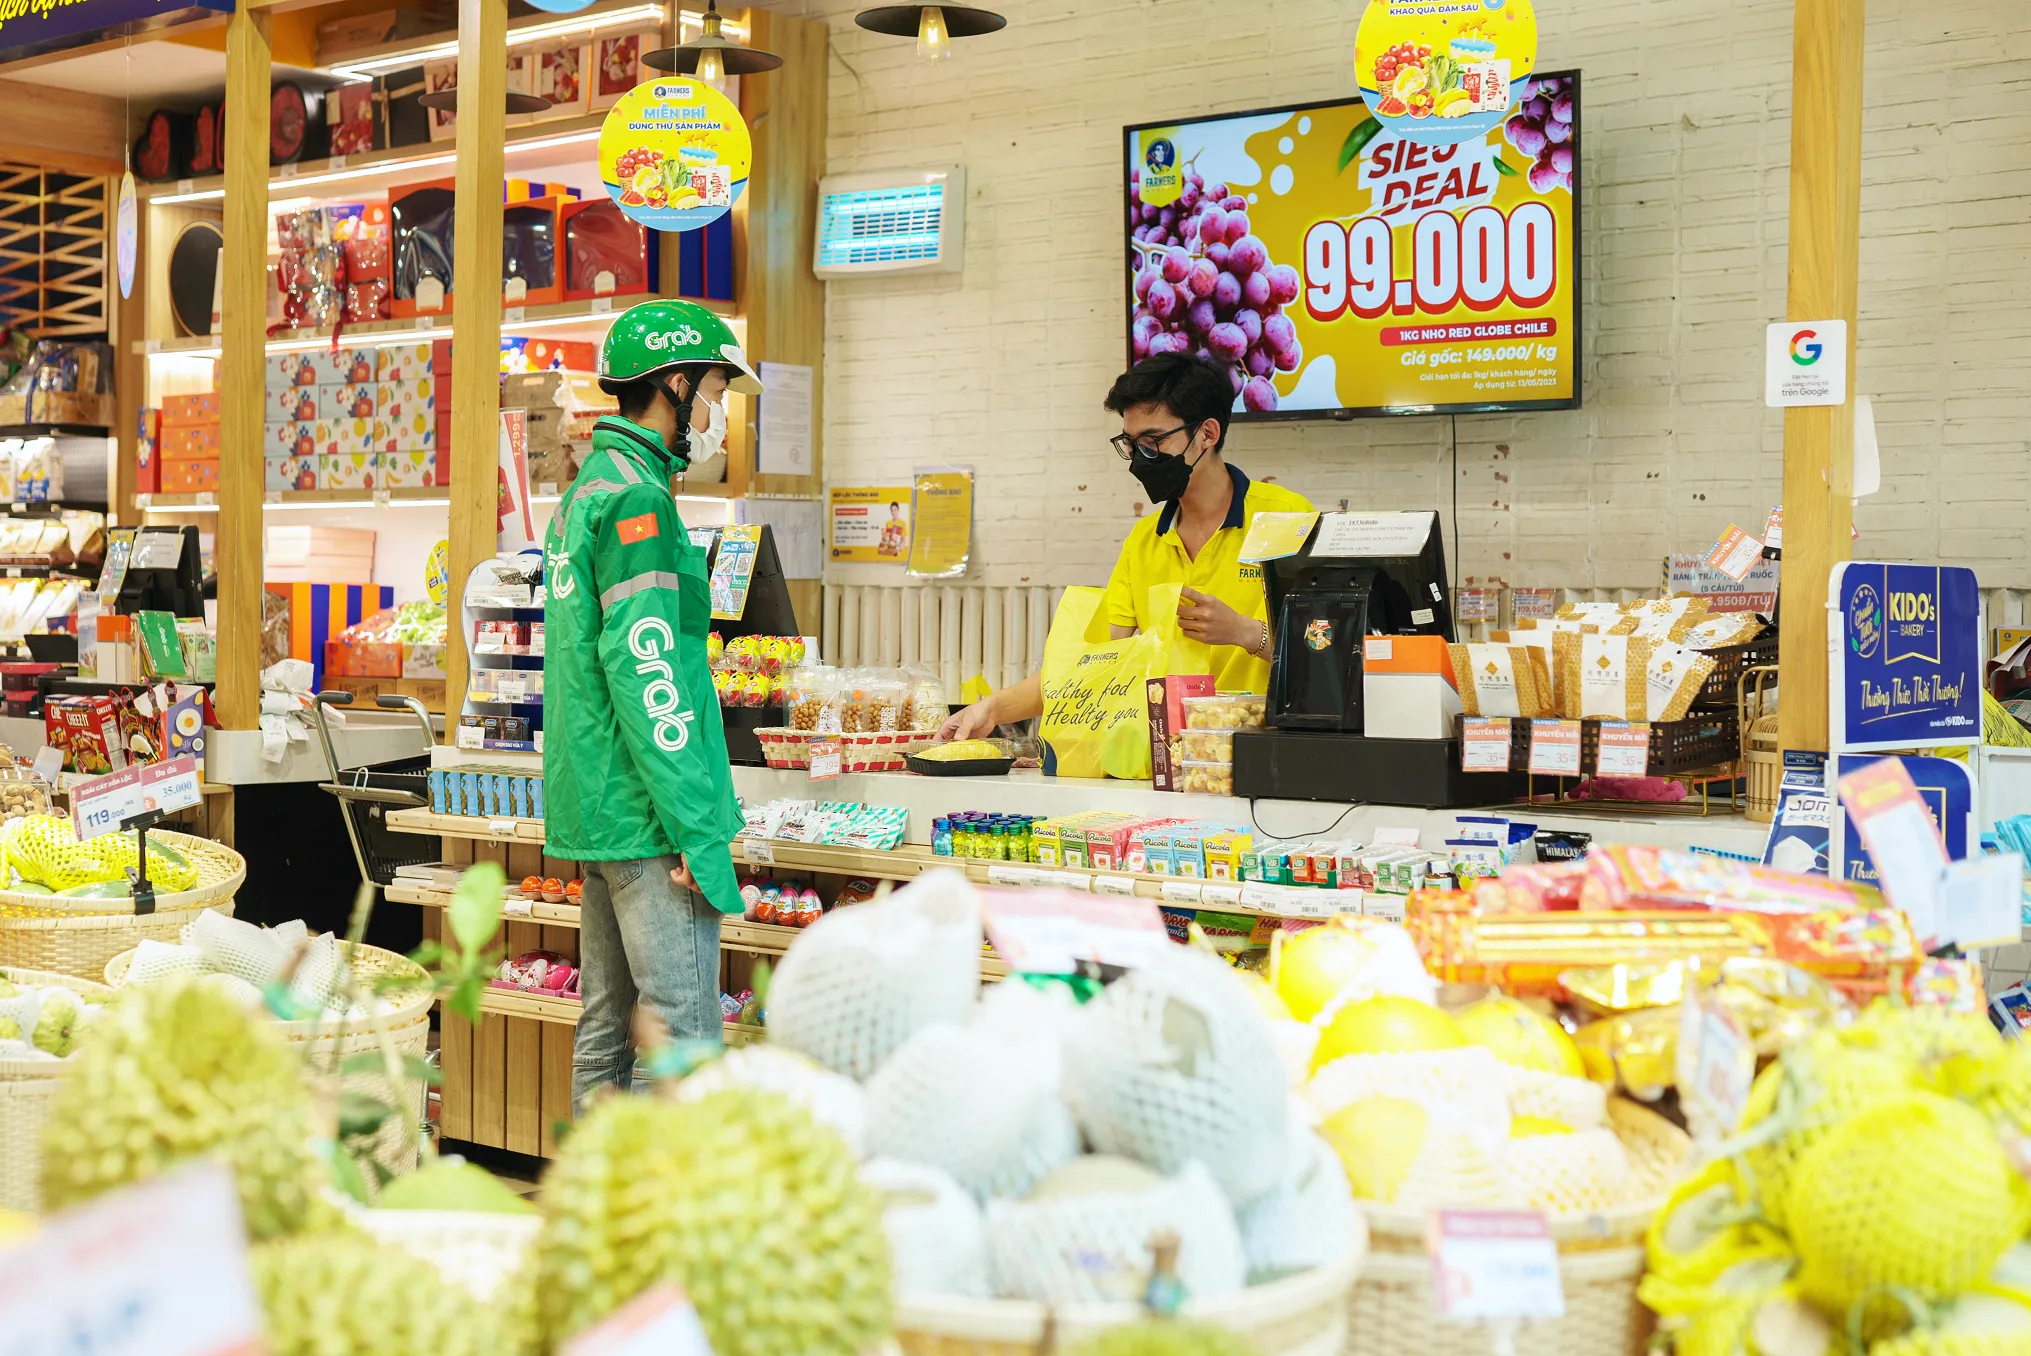 Grab phát hành Báo cáo về Xu hướng đặt món ăn và đi chợ online tại Việt Nam